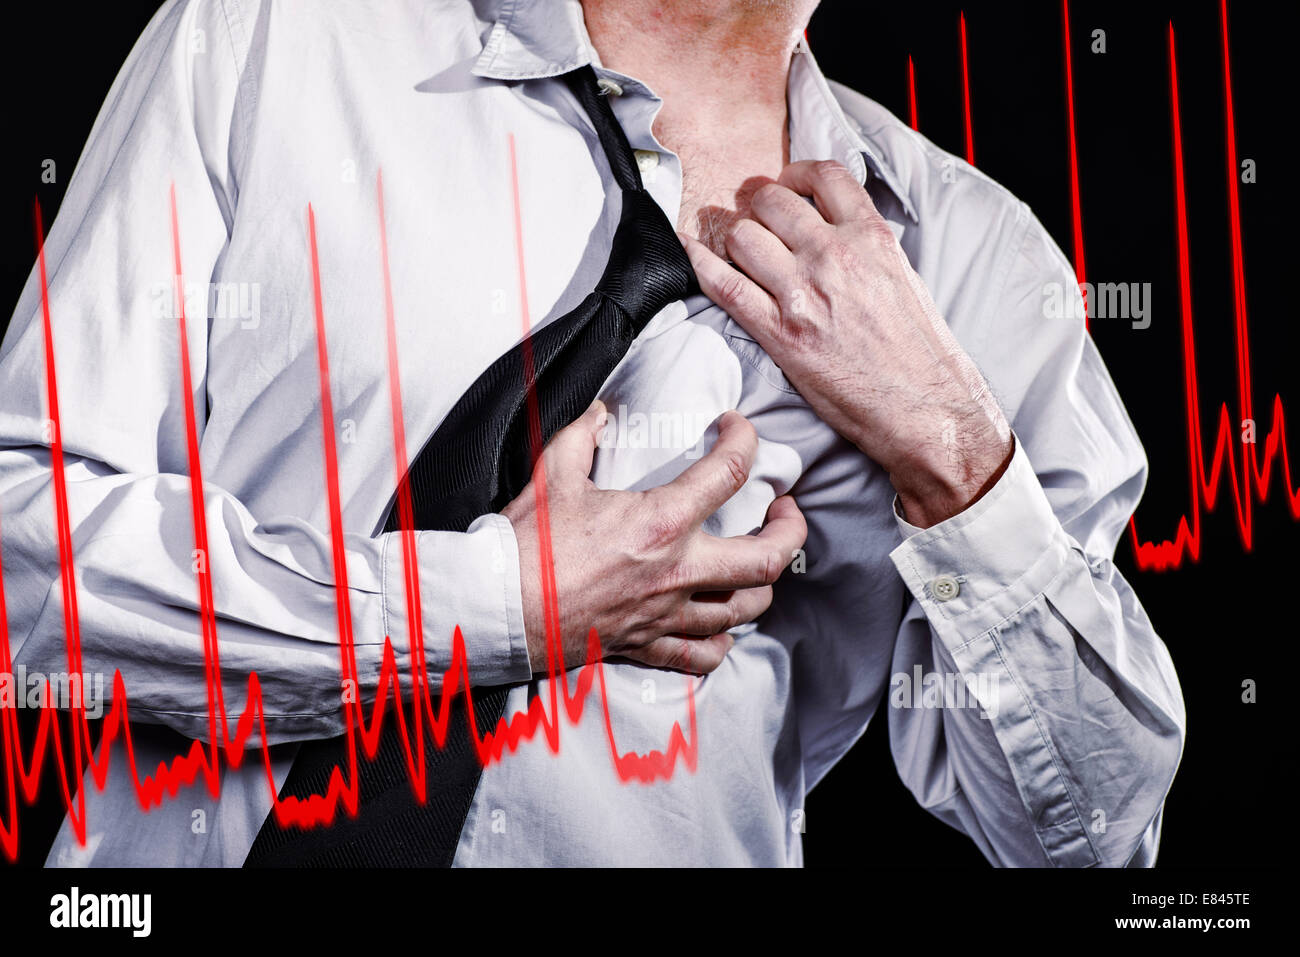 L'uomo pollice in su con una mano stretto al suo cuore area e rip off sua maglietta. La curva di un ECG viene mostrato. Foto Stock